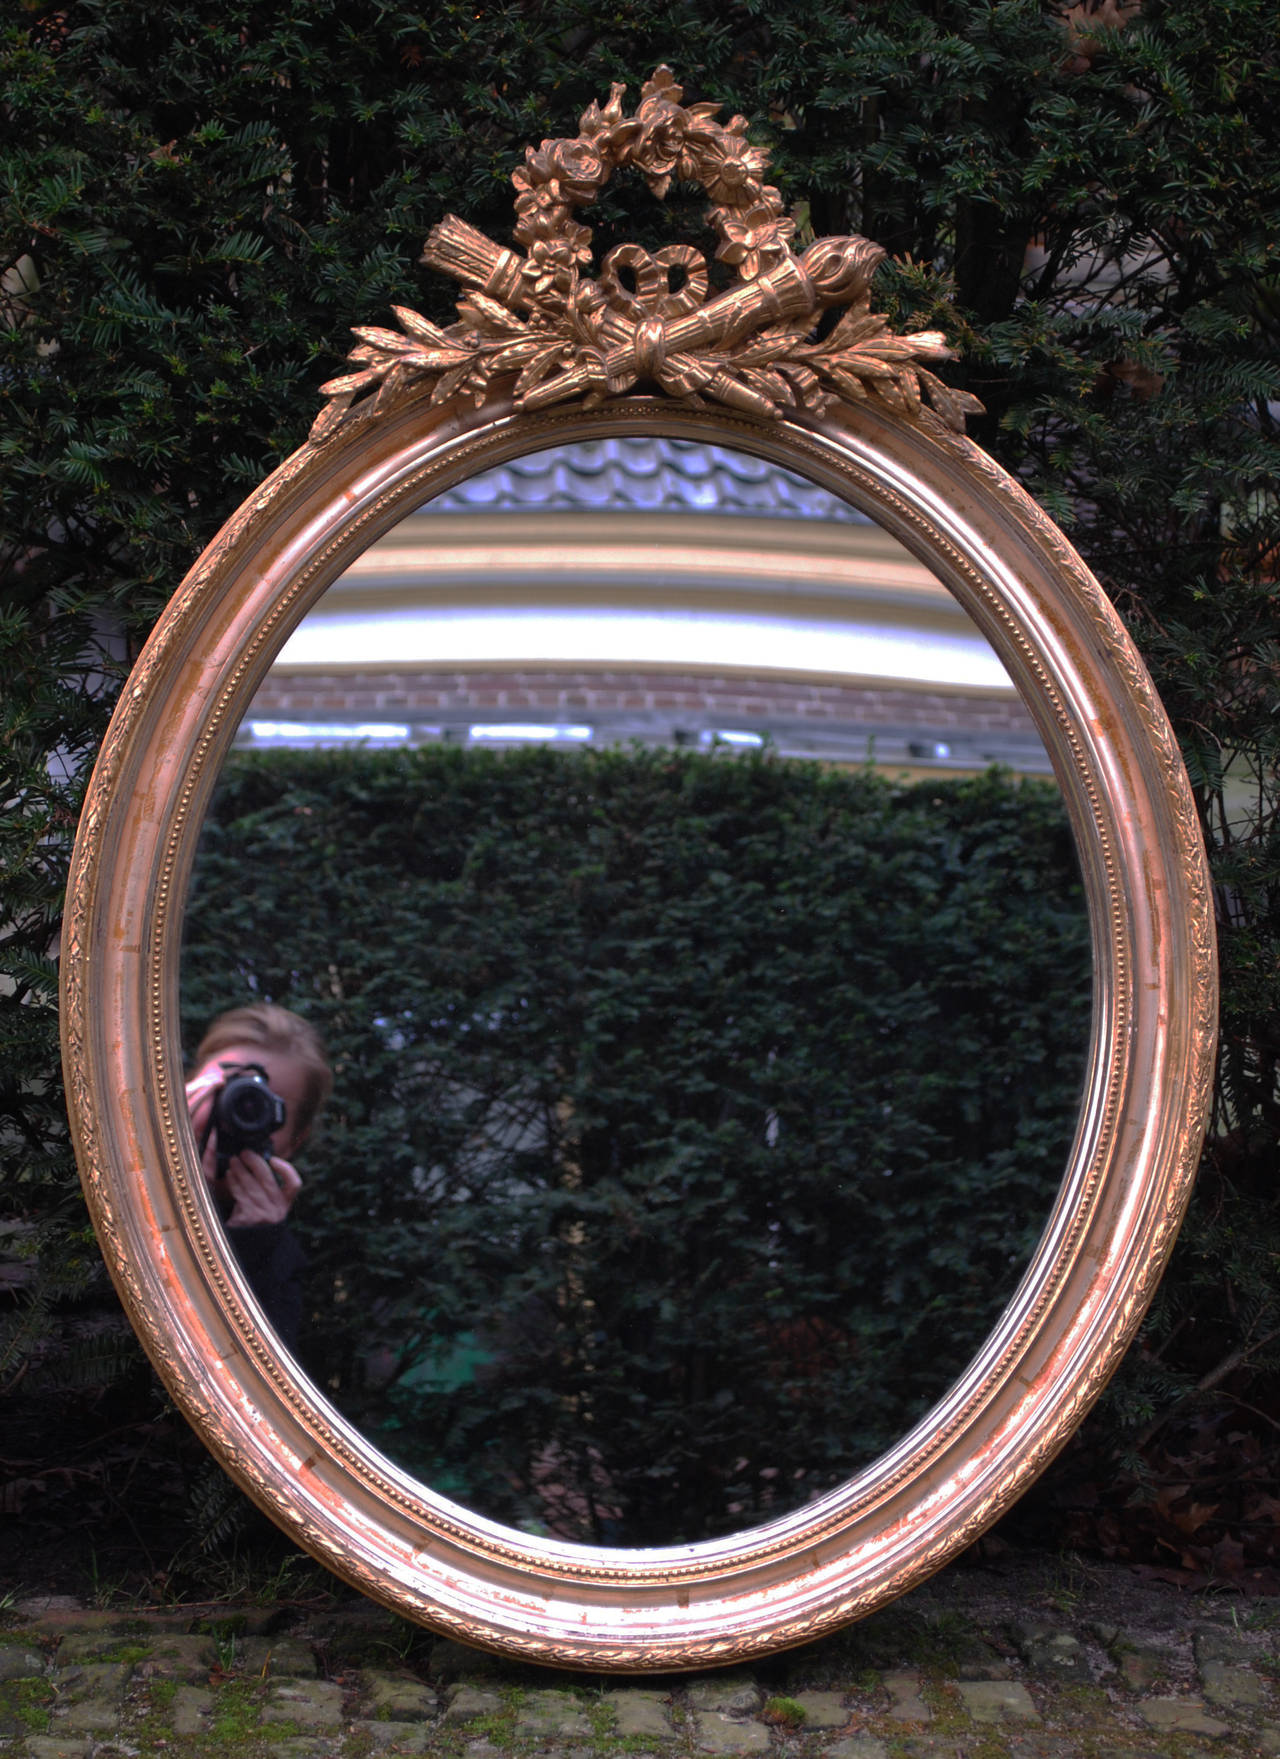 19th c. gold gilded oval mirror.
Originates Belgium, dating app. 1880